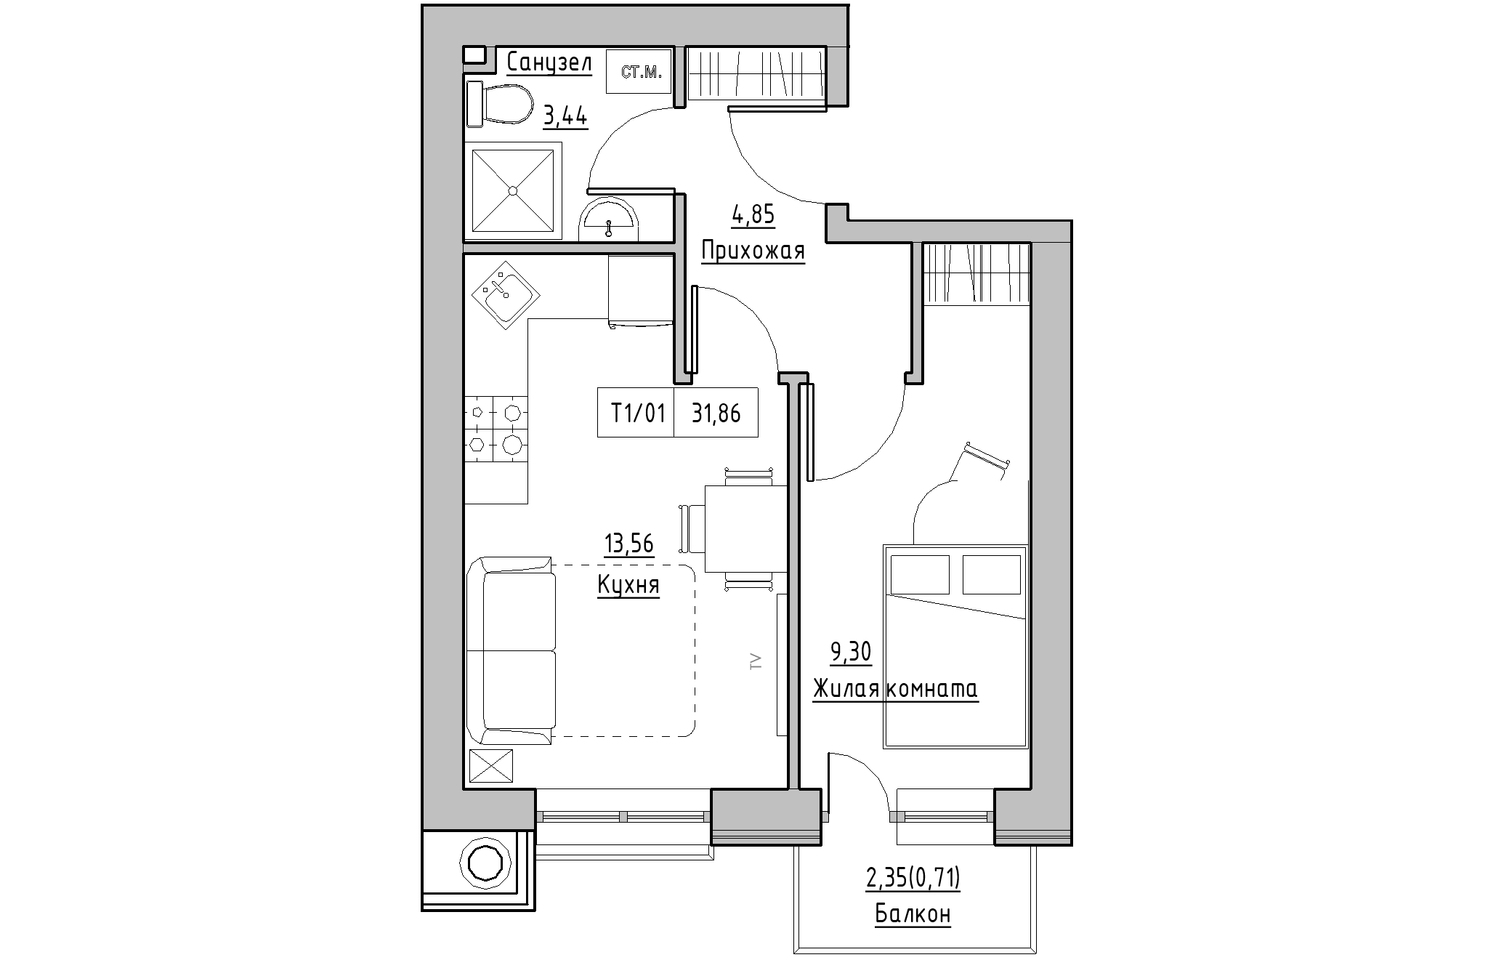 Планування 1-к квартира площею 31.86м2, KS-010-04/0003.